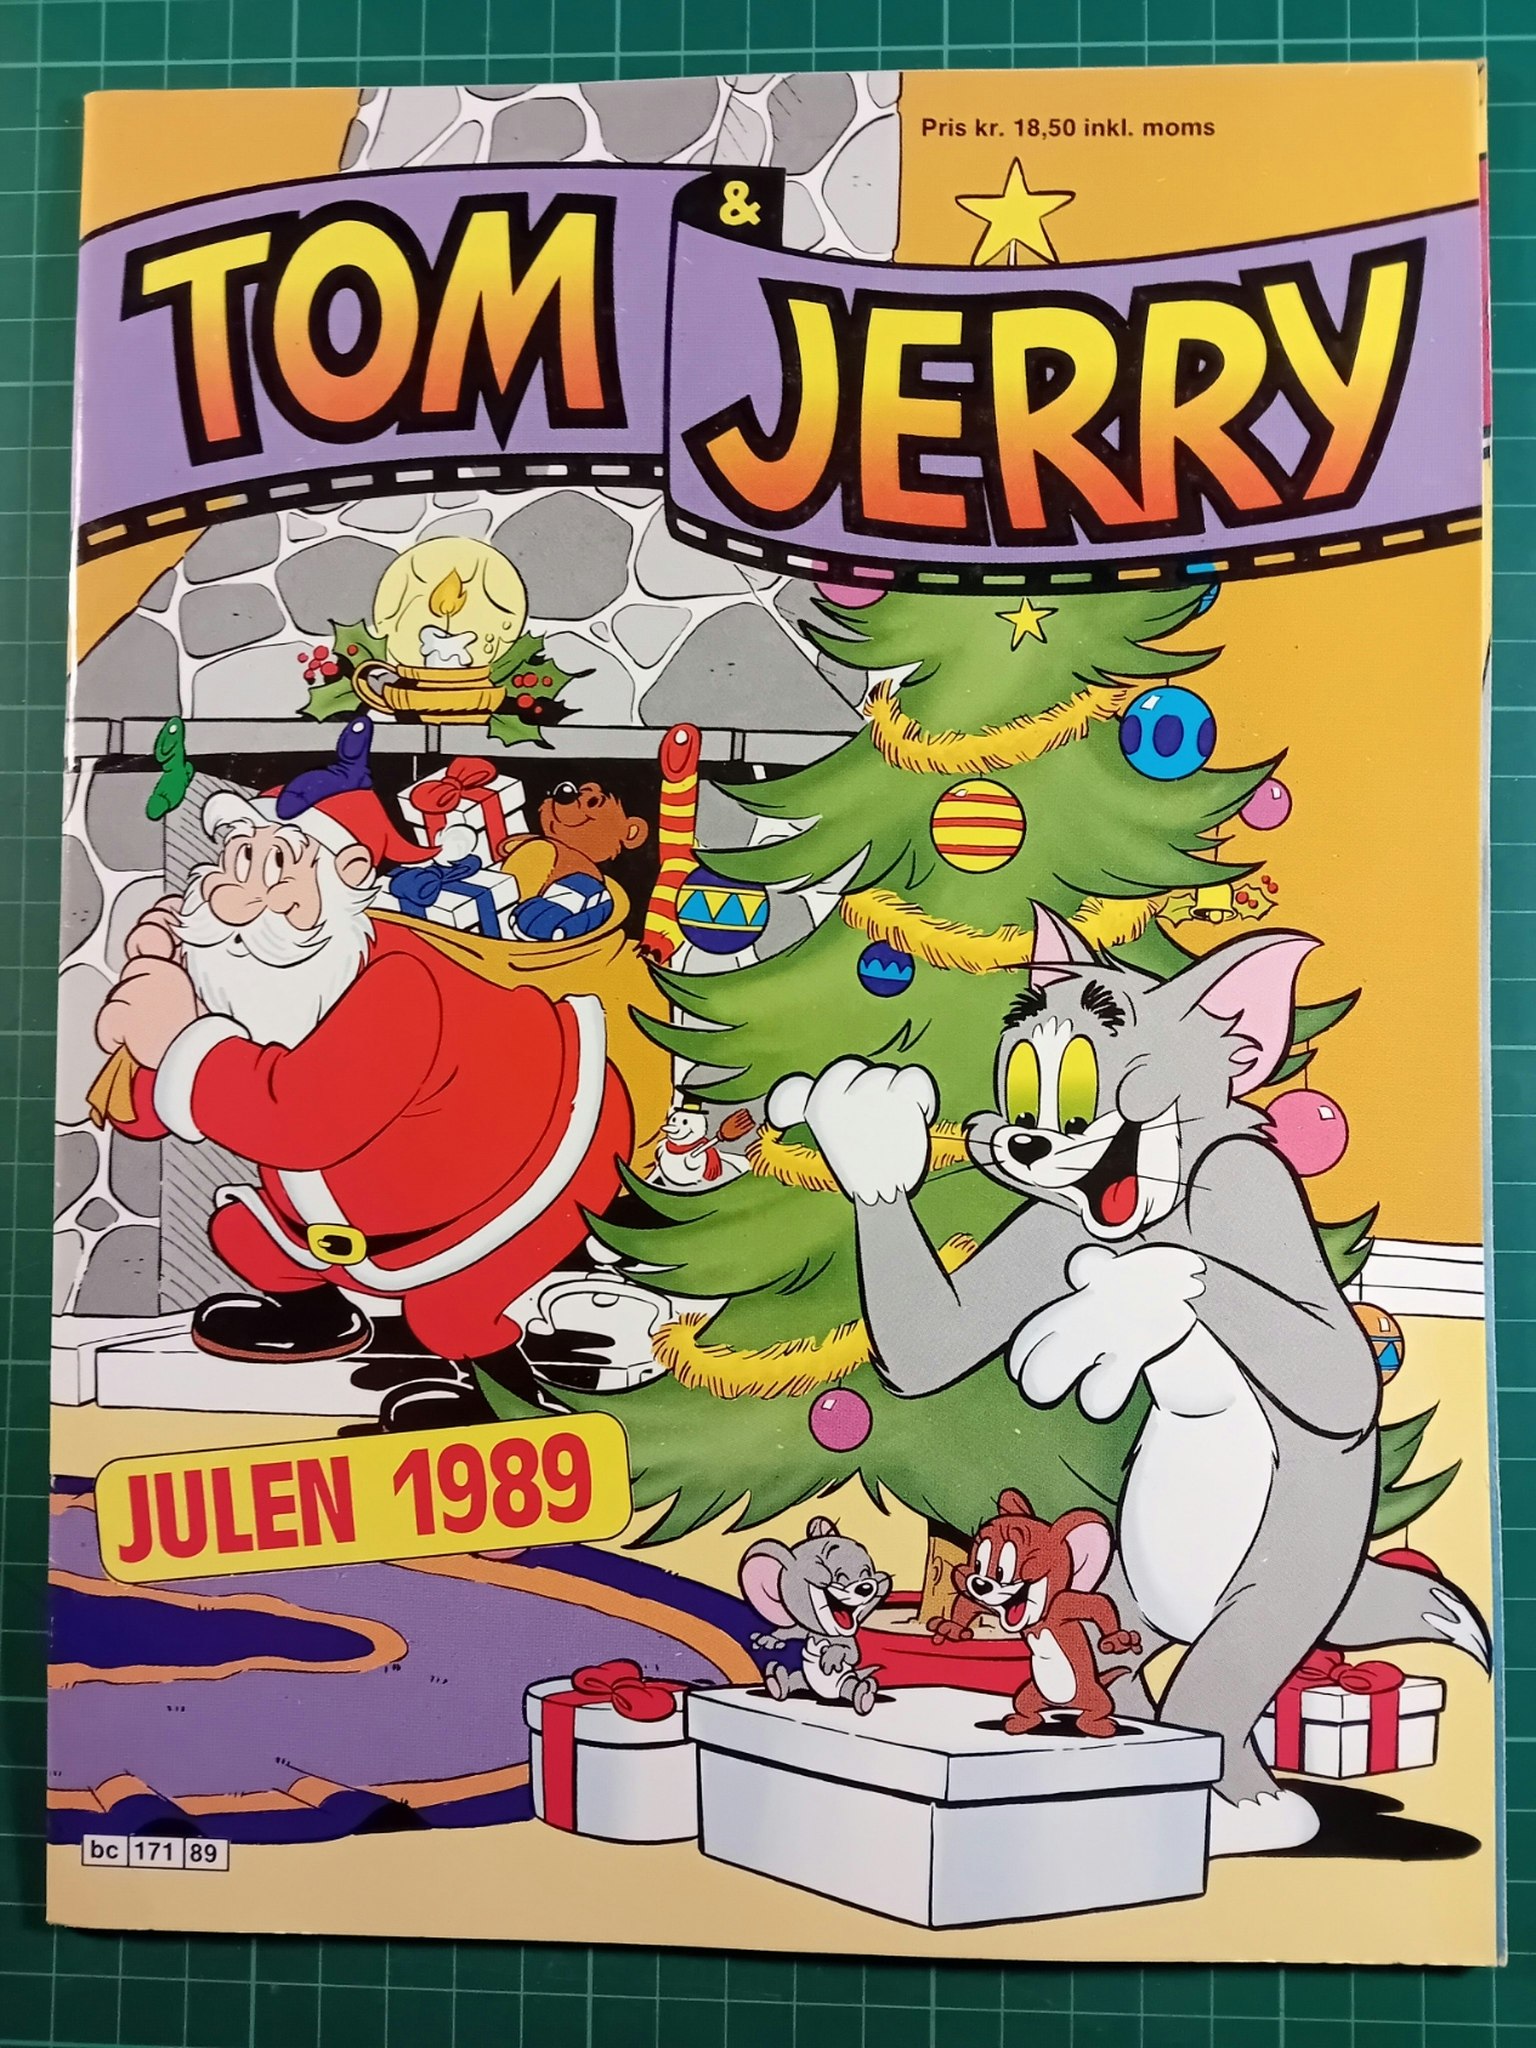 Tom & Jerry julen 1989